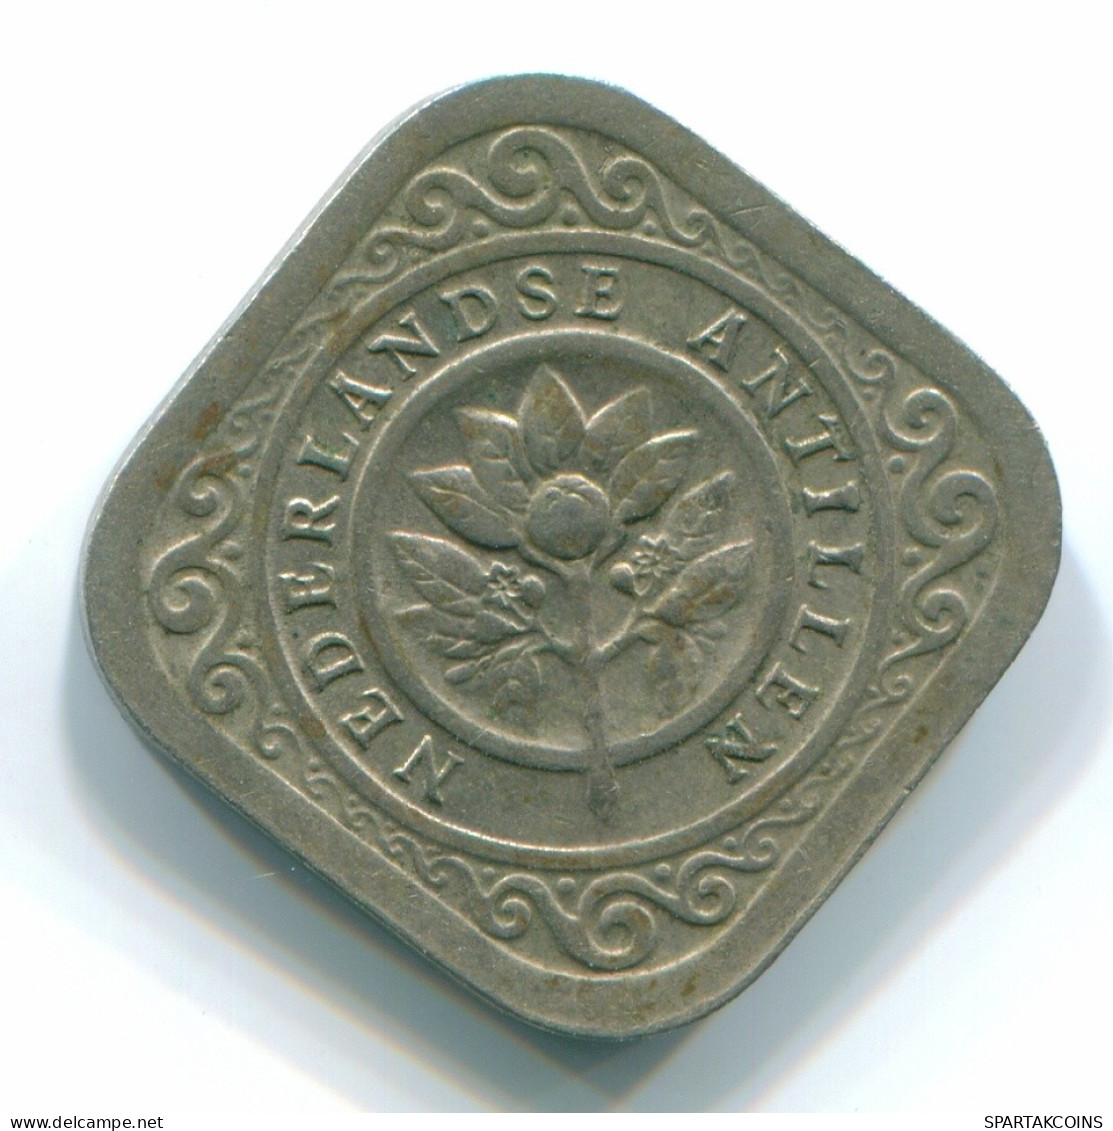 5 CENTS 1967 NETHERLANDS ANTILLES Nickel Colonial Coin #S12470.U.A - Antillas Neerlandesas